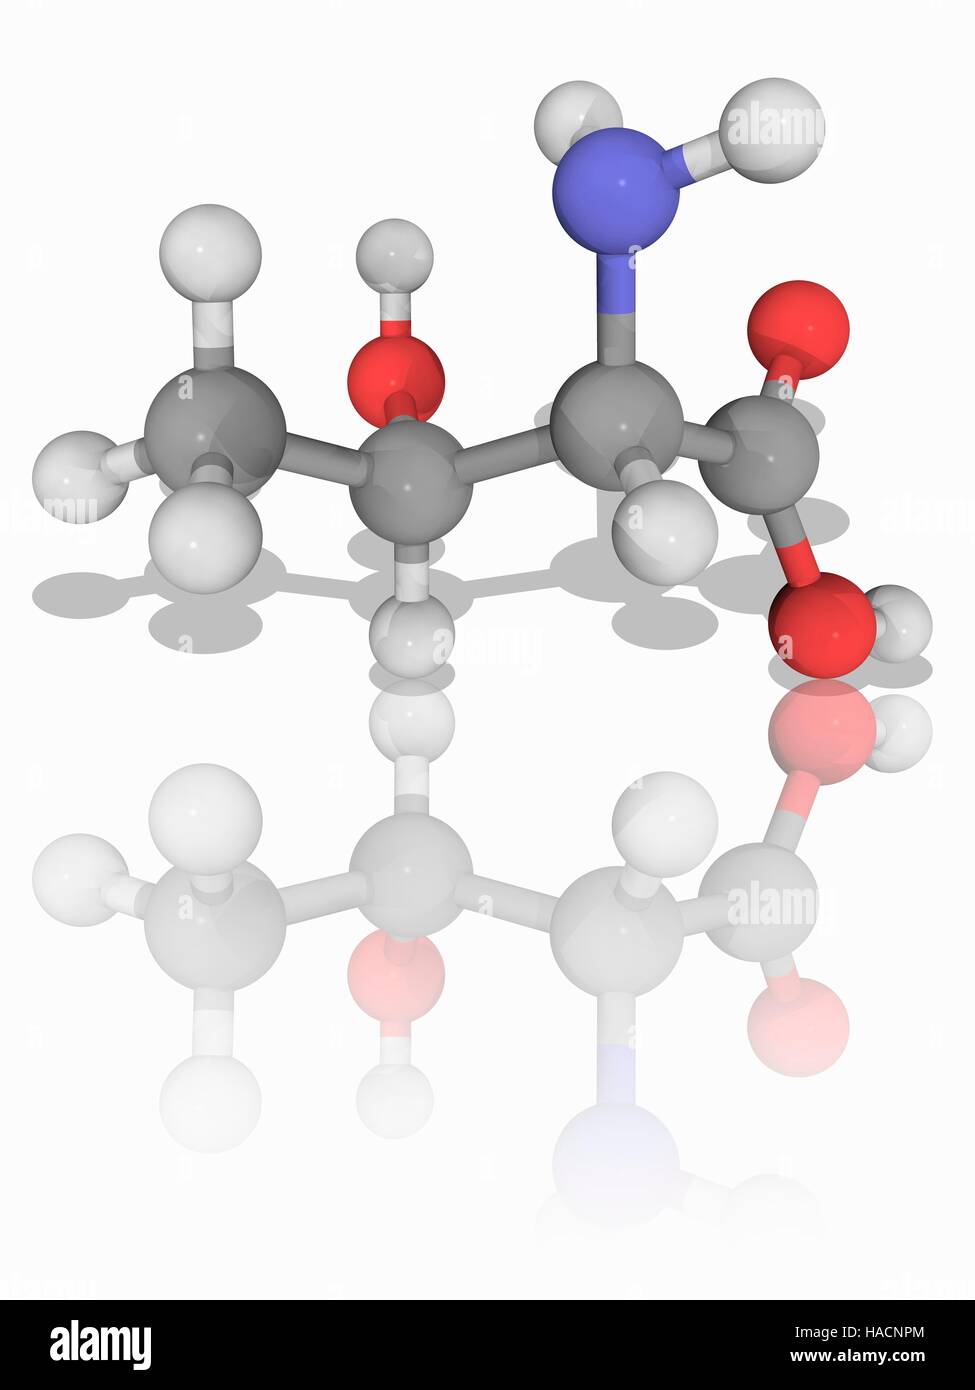 Threonin. Molekulares Modell des wesentlichen Alpha-amino Acid Threonin (C4. H9. N.O3). Es gehört zu den Aminosäuren, die ein Vorläufer von Proteinen (proteinogene) ist. Atome als Kugeln dargestellt werden und sind farblich gekennzeichnet: Kohlenstoff (grau), Wasserstoff (weiß), Stickstoff (blau) und Sauerstoff (rot). Abbildung. Stockfoto